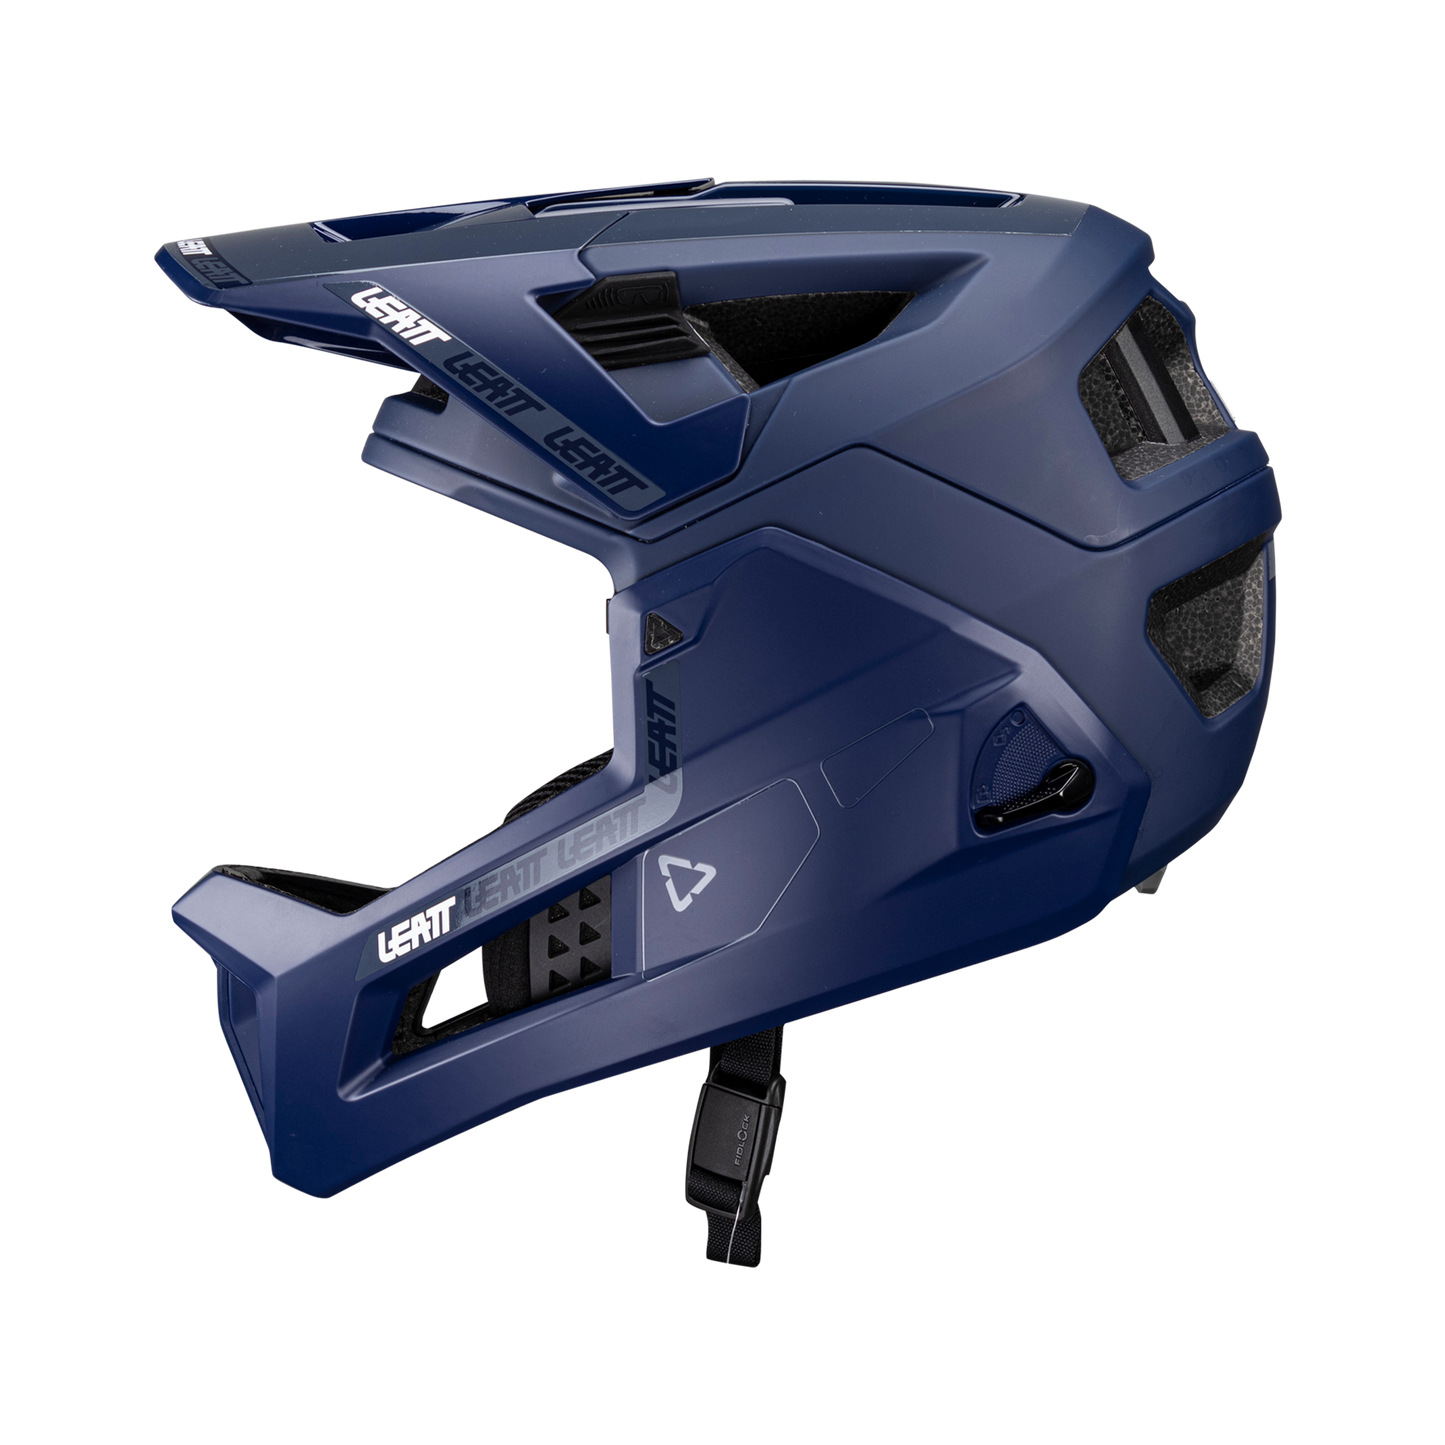 Helmet MTB Enduro 4.0  - Blue